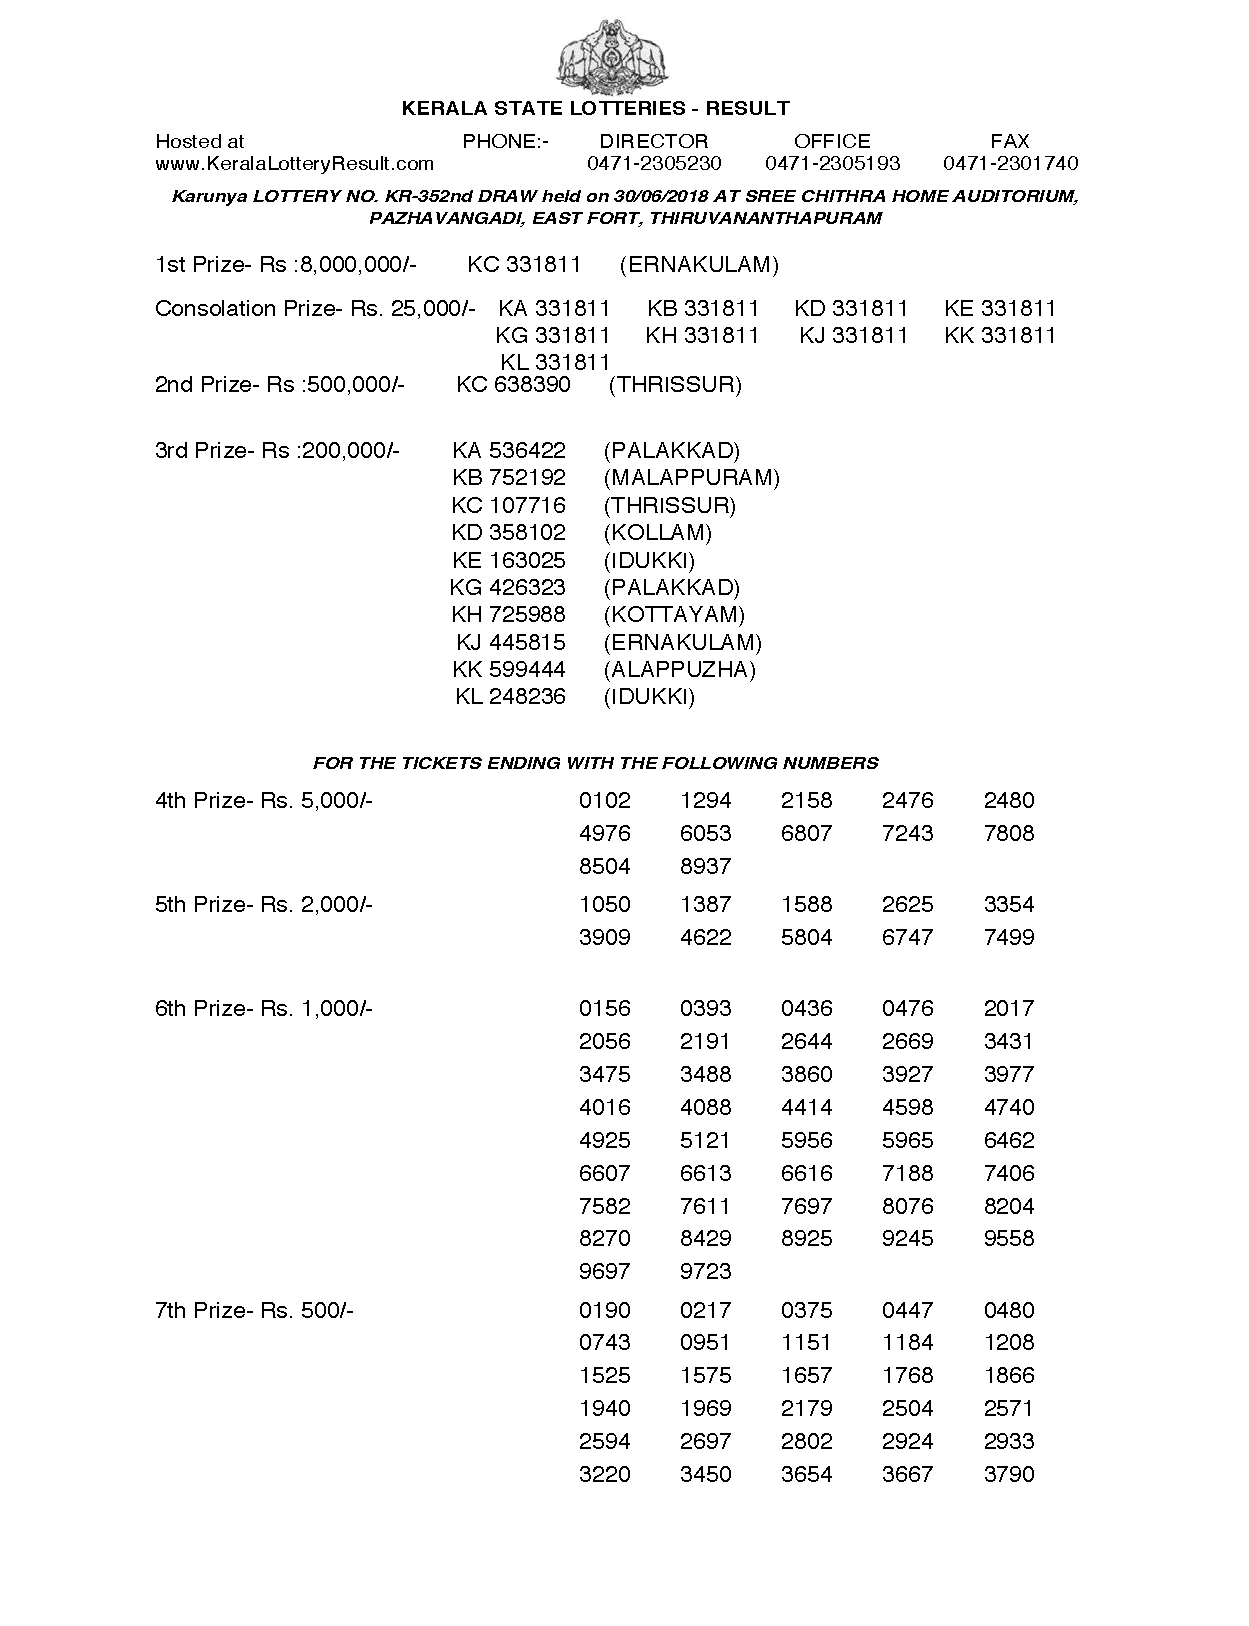 Karunya KR352 Kerala Lottery Results Screenshot: Page 1